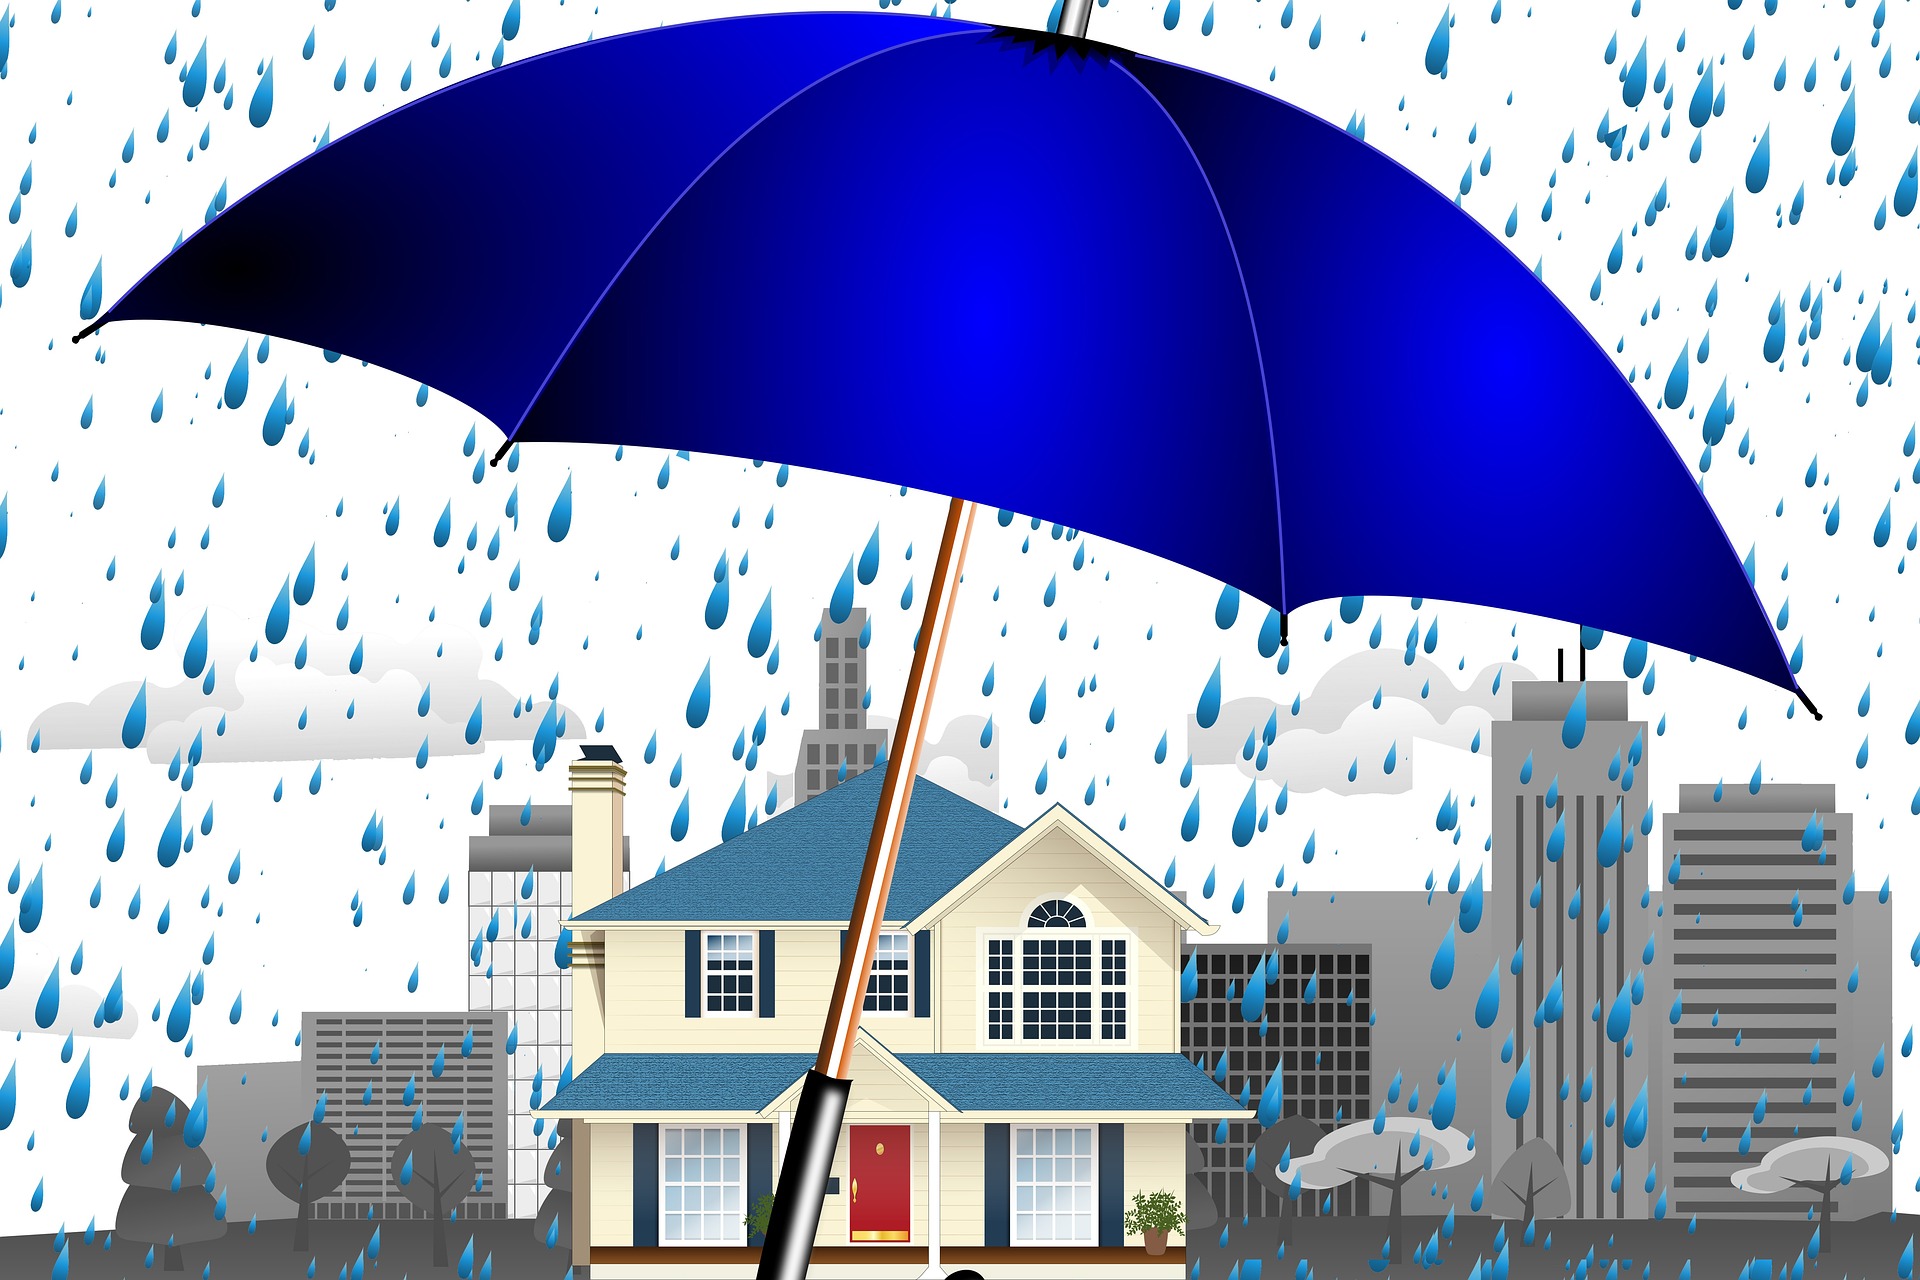 Haz uso de tu seguro de daños, si tienes problemas con las lluvias